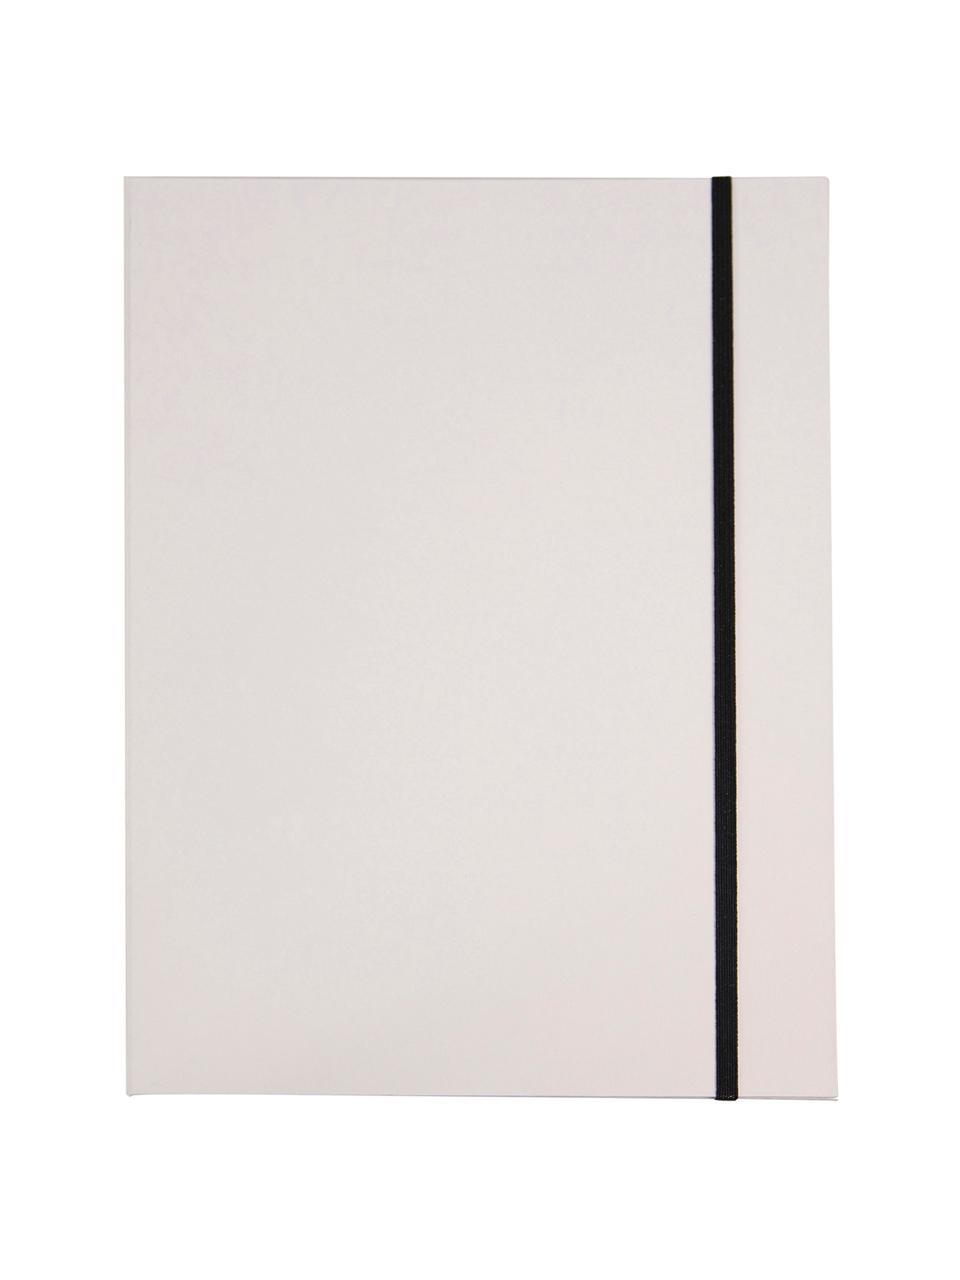 Chemise Paulina, 2 pièces, Blanc, larg. 23 x haut. 32 cm